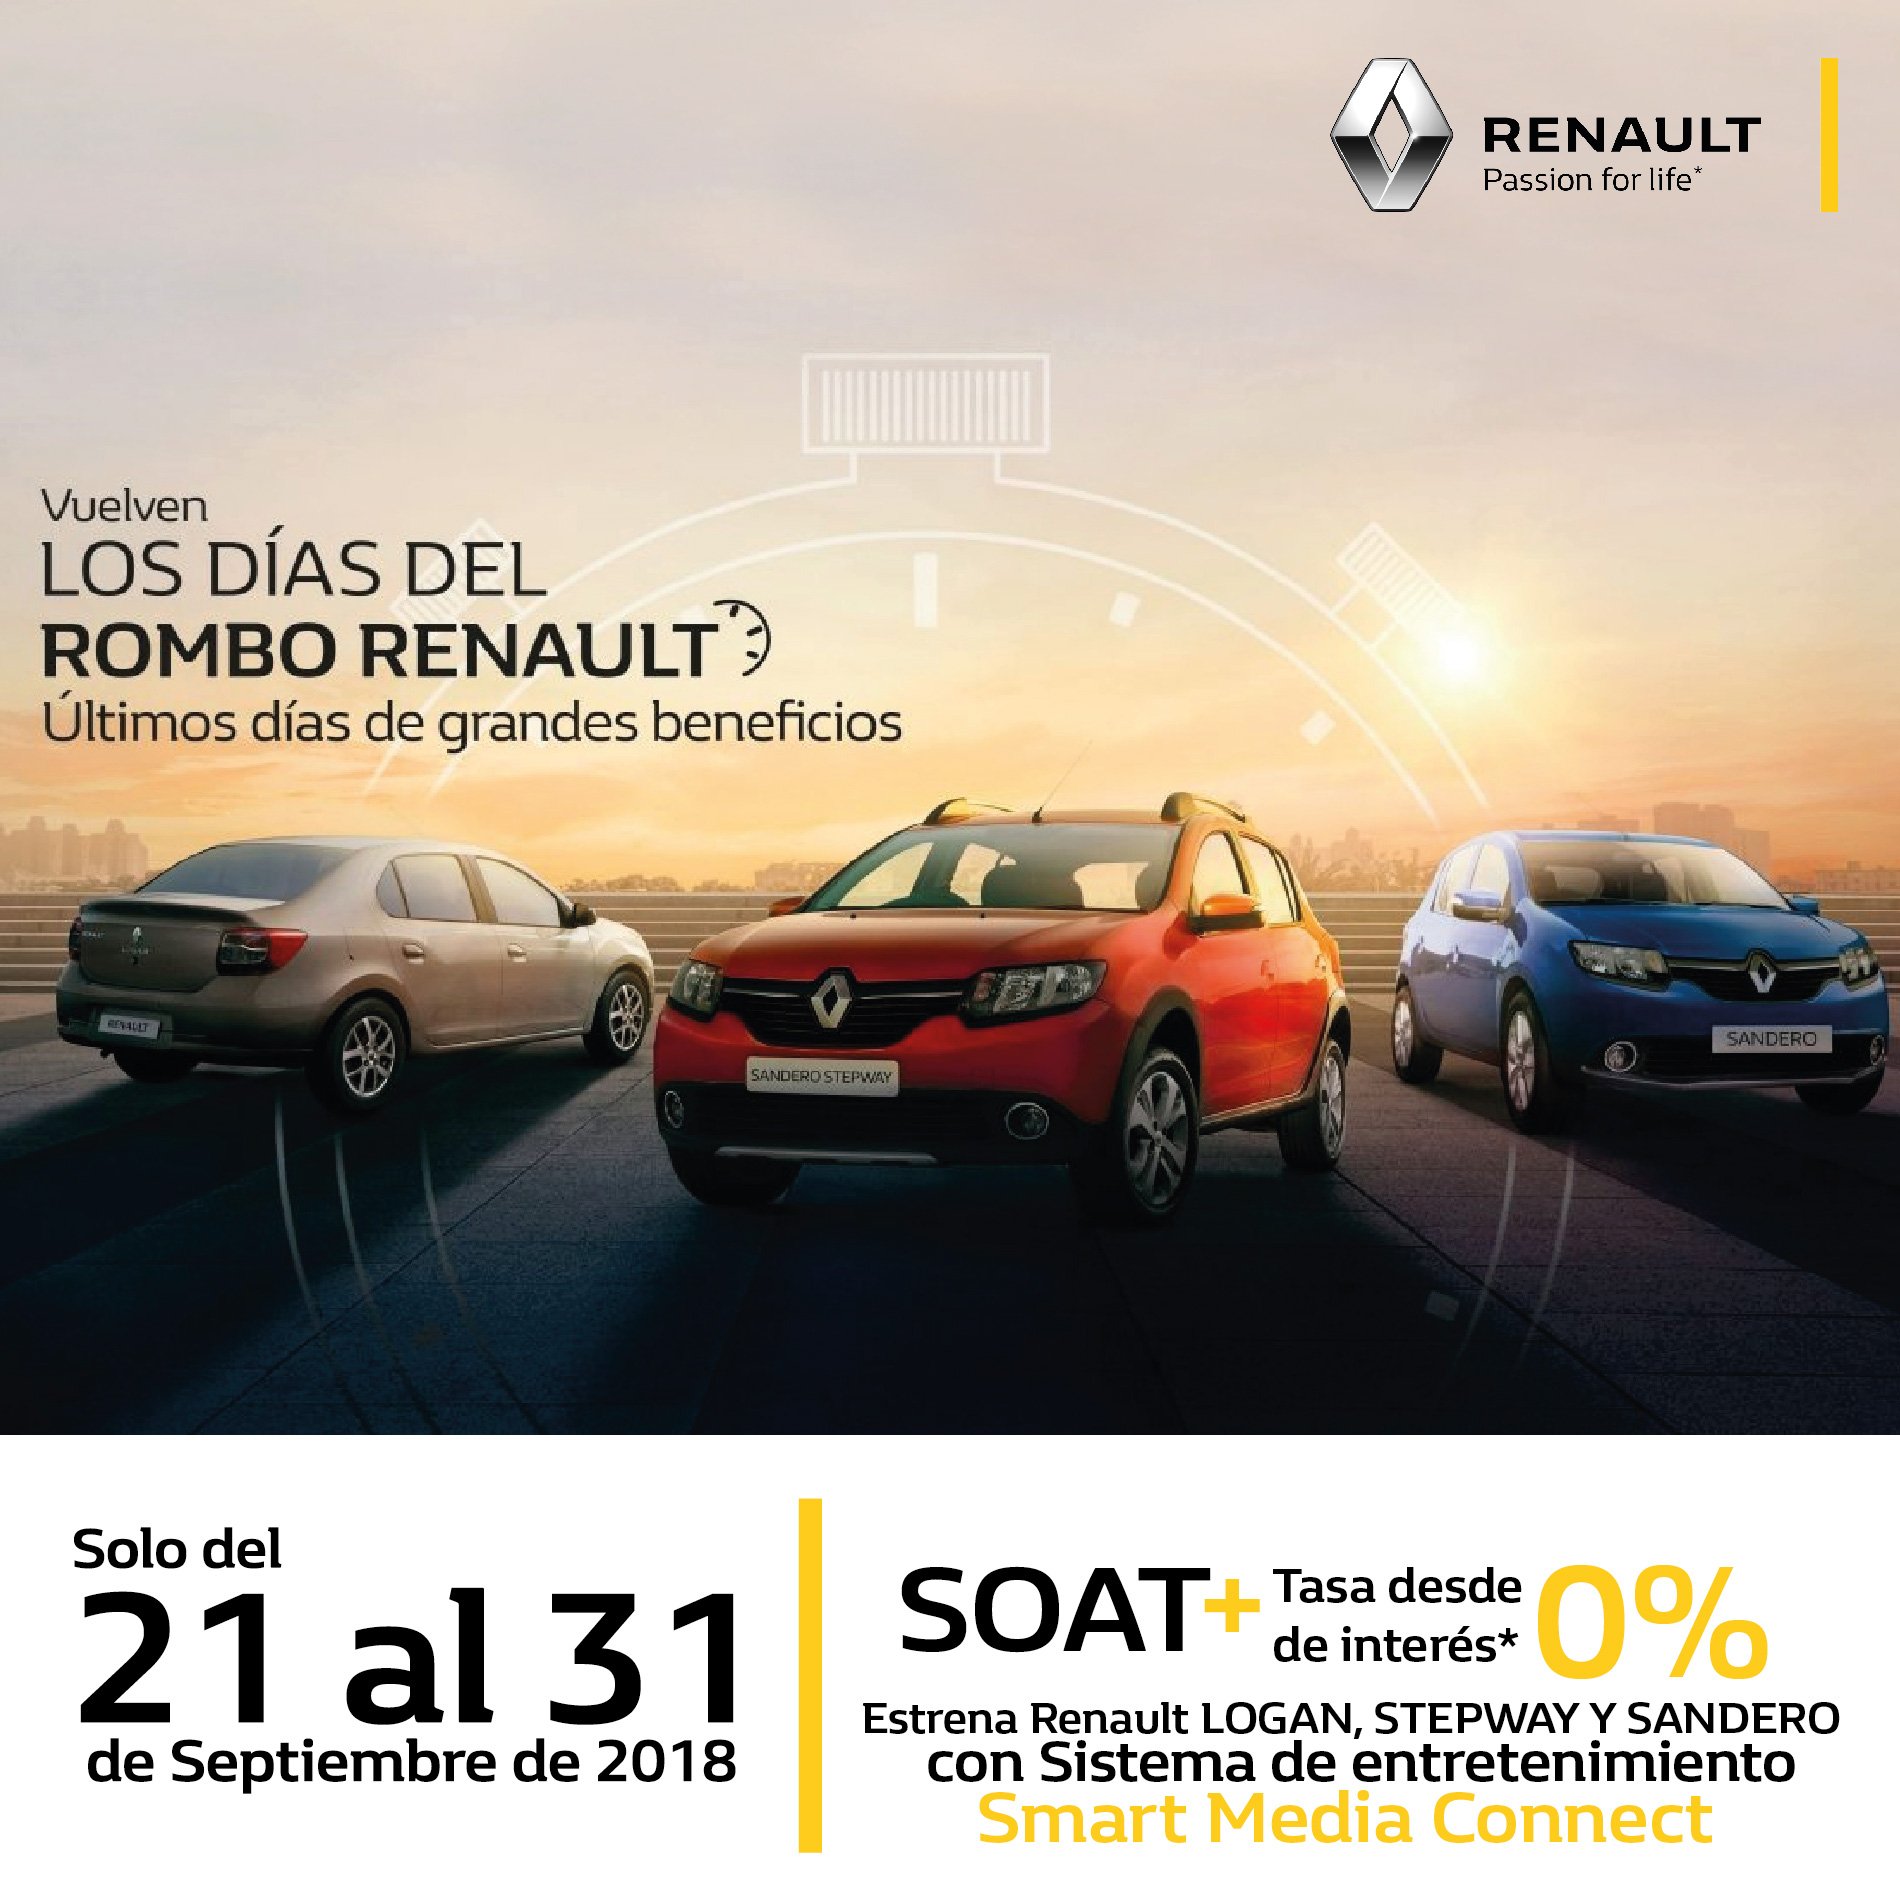 Renault TAYRONA on Twitter: "Ven a Tayrona Automotriz este fin de semana y aprovecha los últimos días Del Rombo con descuentos incomparables. #Renault #TayronaAutomotriz #Díasdelrombo https://t.co/lnbI0mwku7" Twitter